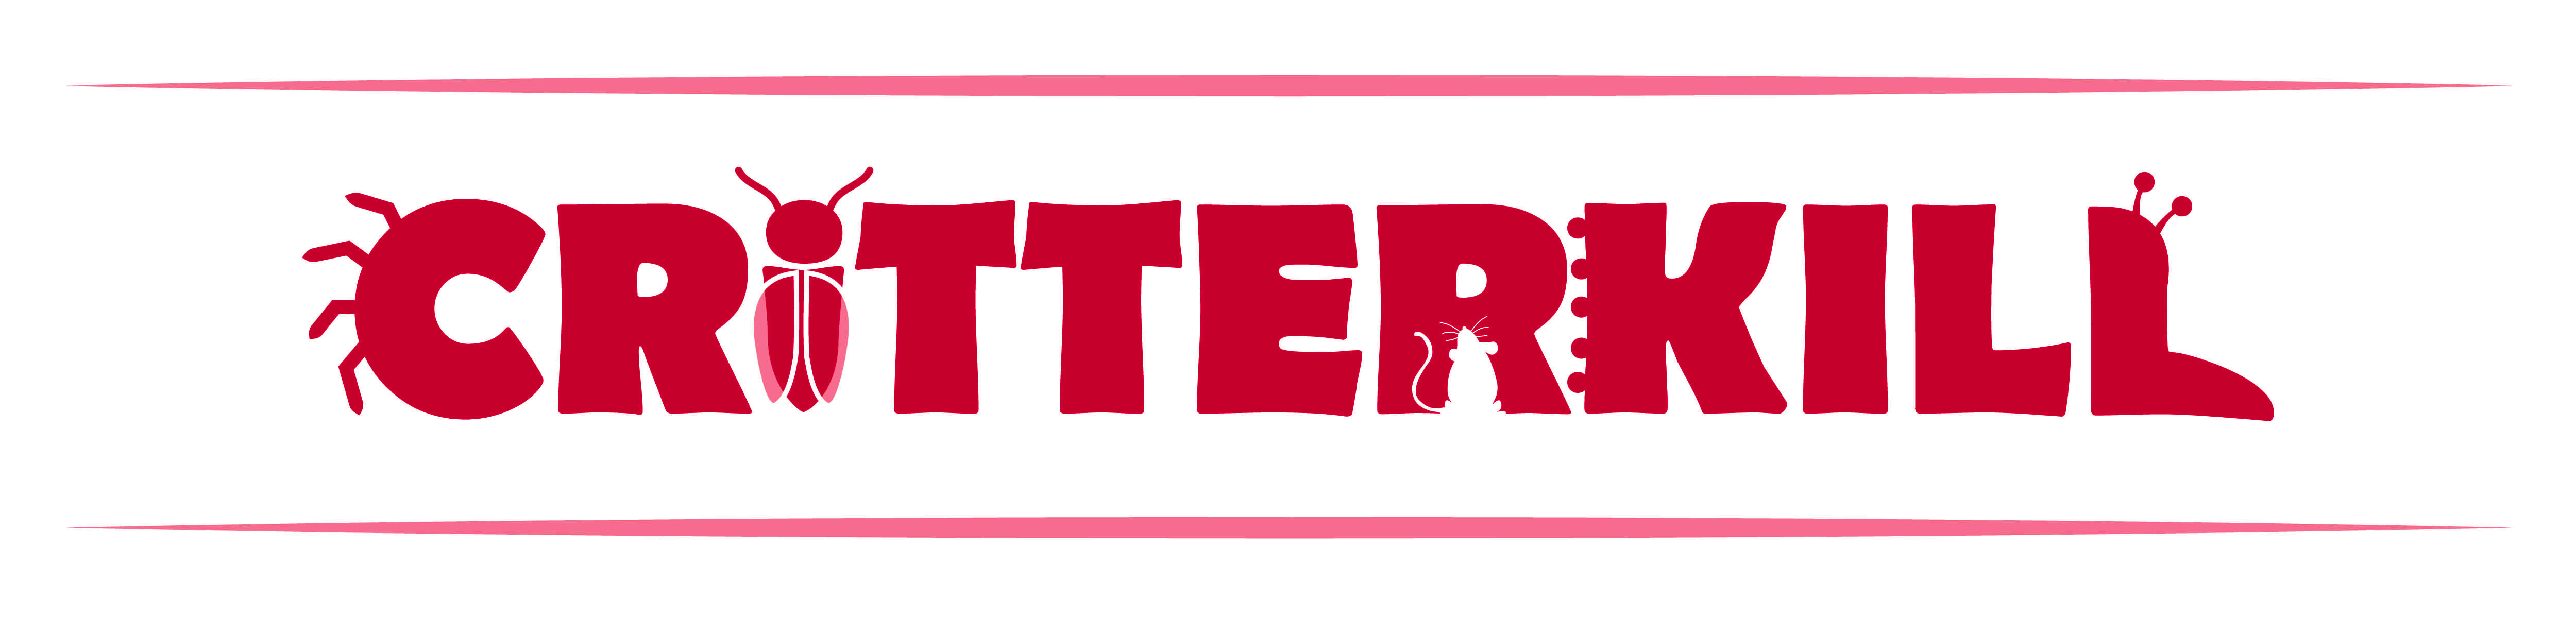 critterkill header logo